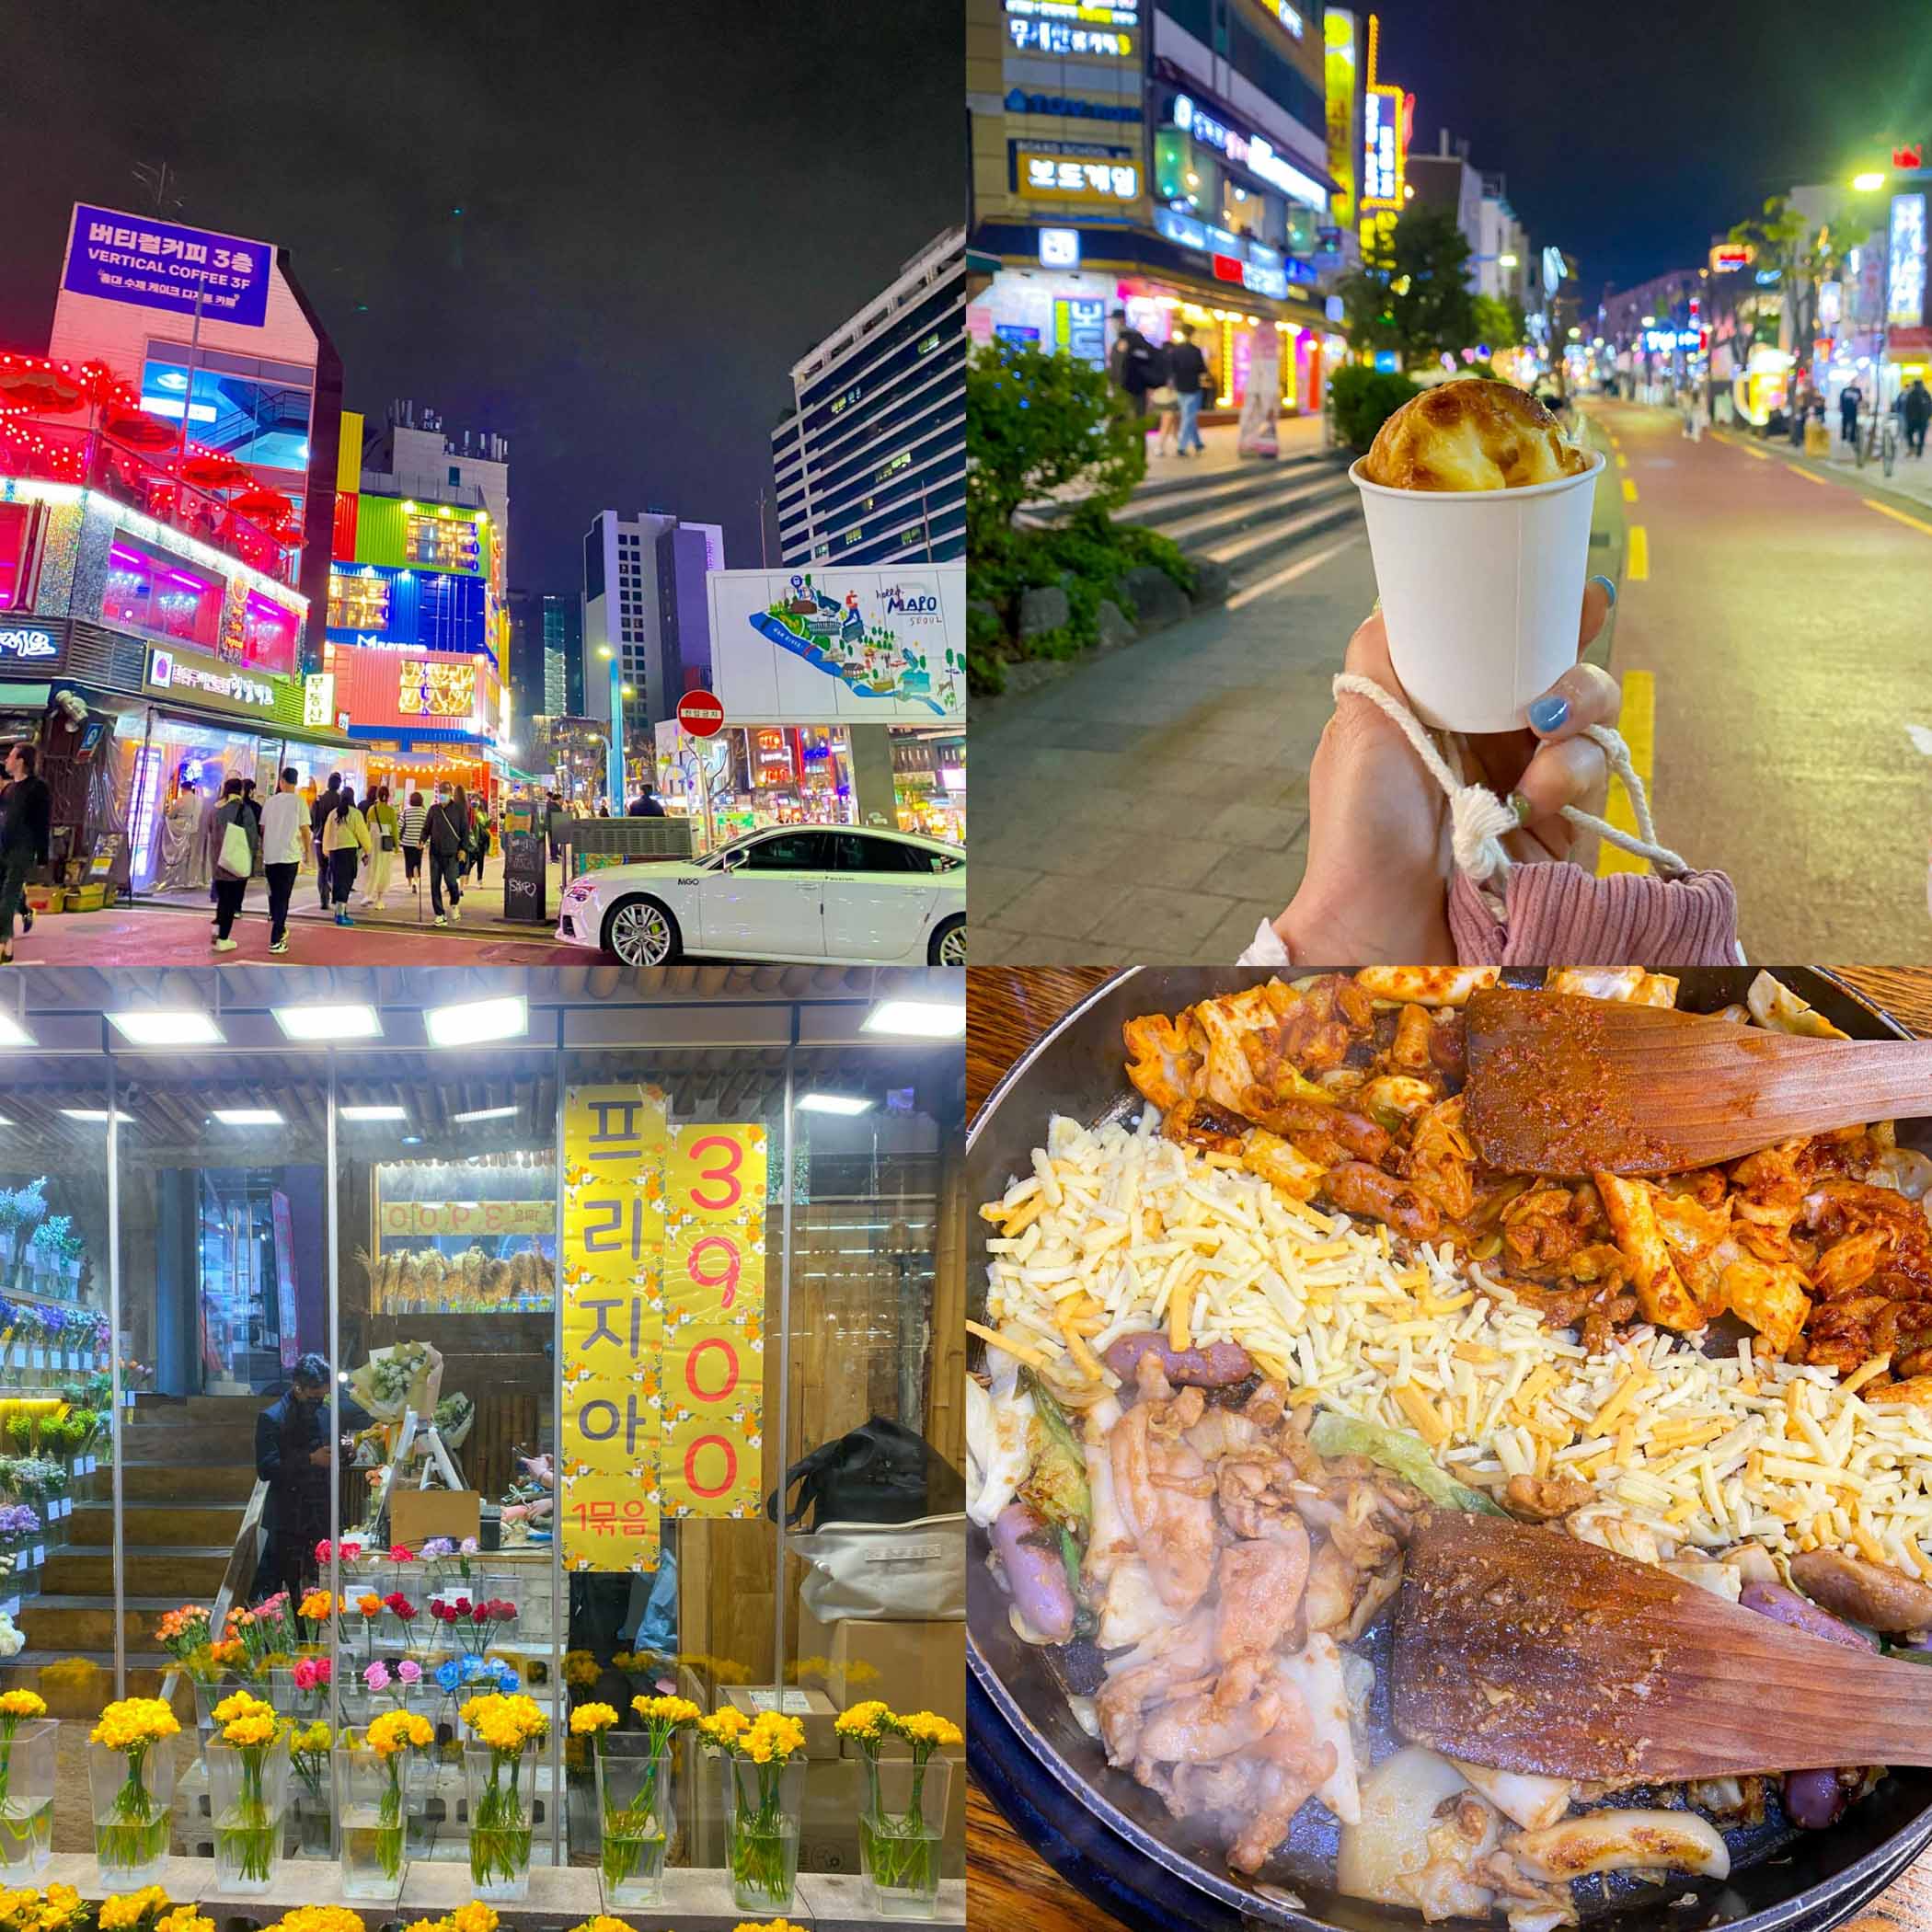 ย่าน Hongdae เชื่อว่าการมาเกาหลีต้องไม่พลาดการมาฮงแด แหล่งรวมสายช๊อป สายกิน ทุกอย่างที่นี่มาครบ